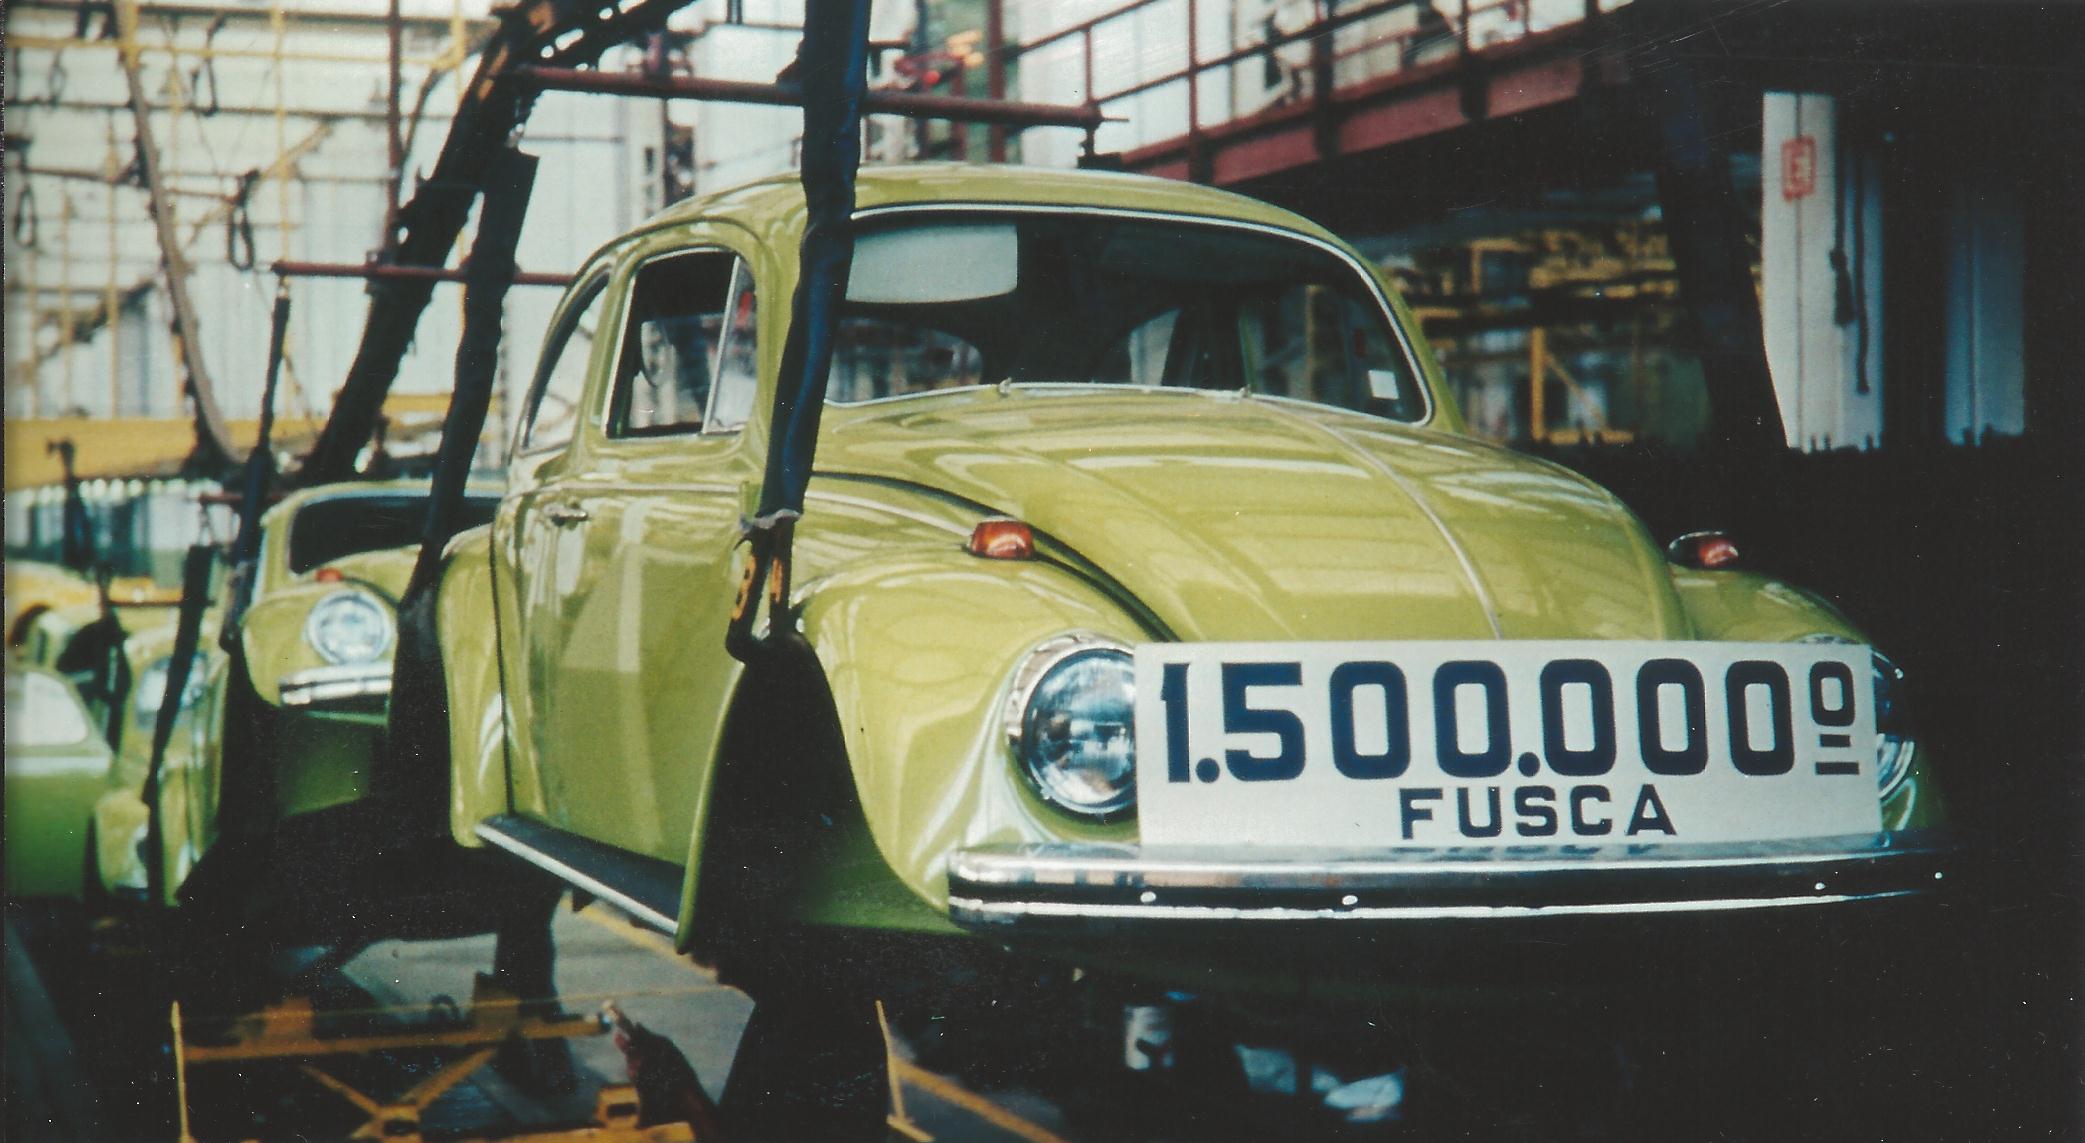 Volkswagen Fusca teve mais de 3 milhões de unidades fabricadas no Brasil